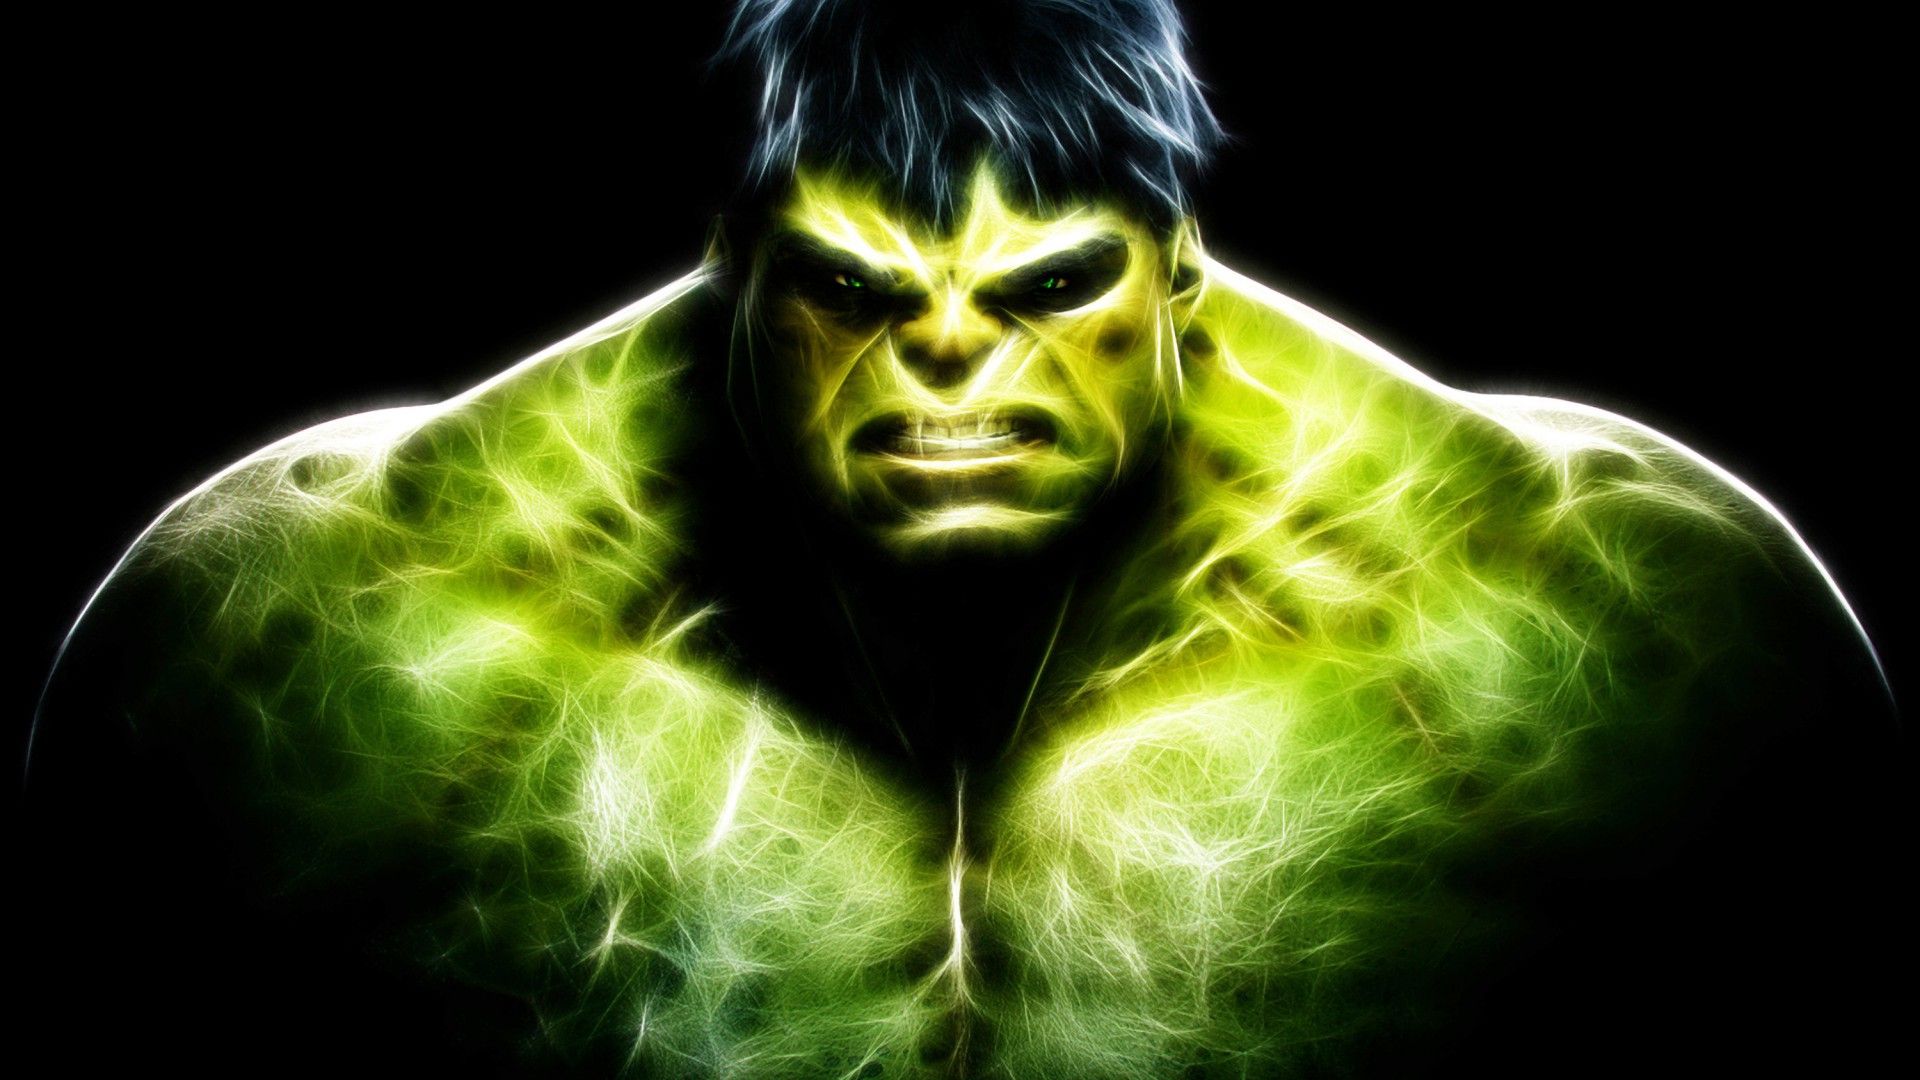 Hulk Wallpaper for Desktop